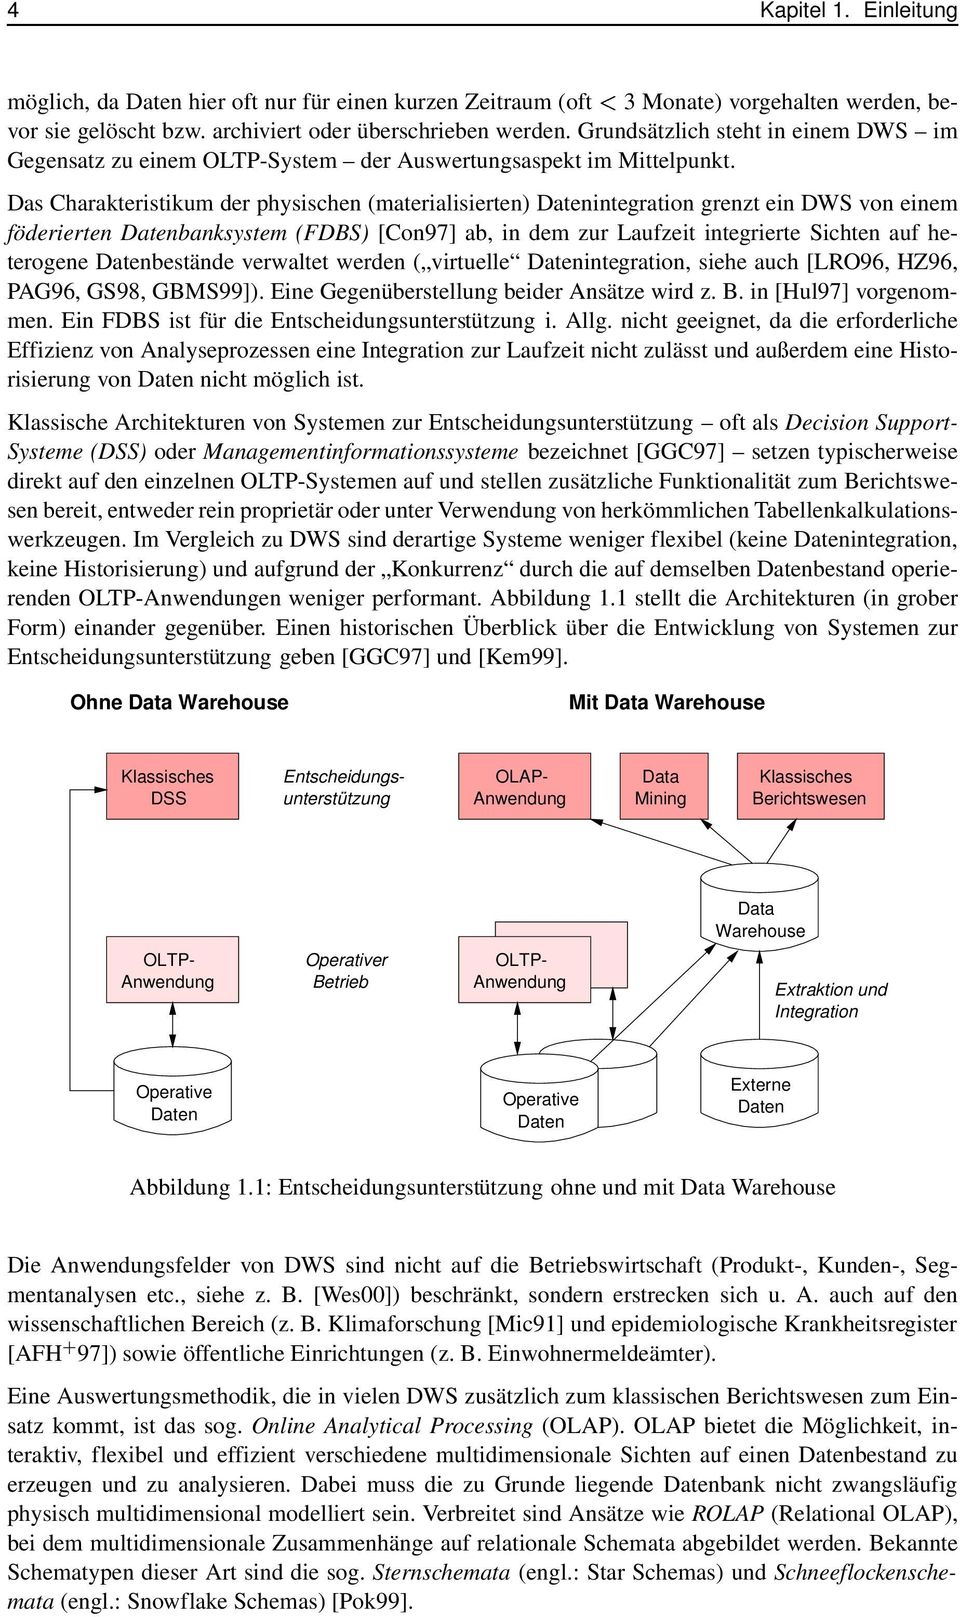 Das Charakteristikum der physischen (materialisierten) Datenintegration grenzt ein DWS von einem föderierten Datenbanksystem (FDBS) [Con97] ab, in dem zur Laufzeit integrierte Sichten auf heterogene